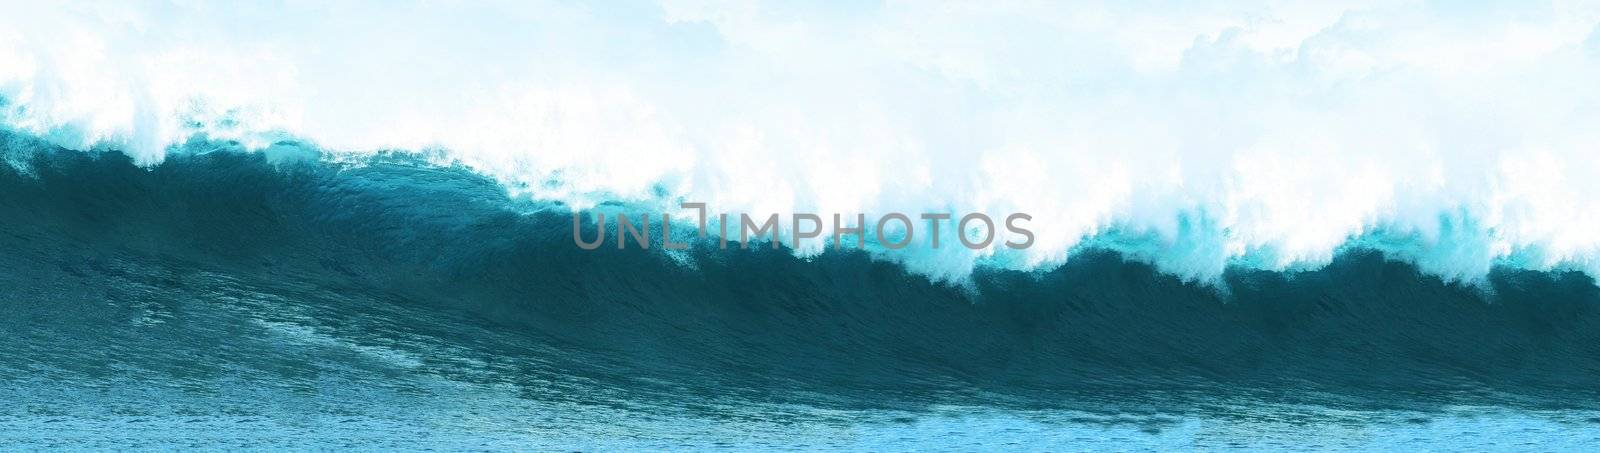 Big Blue Surfing Wave Breaks in Ocean by ozaiachin